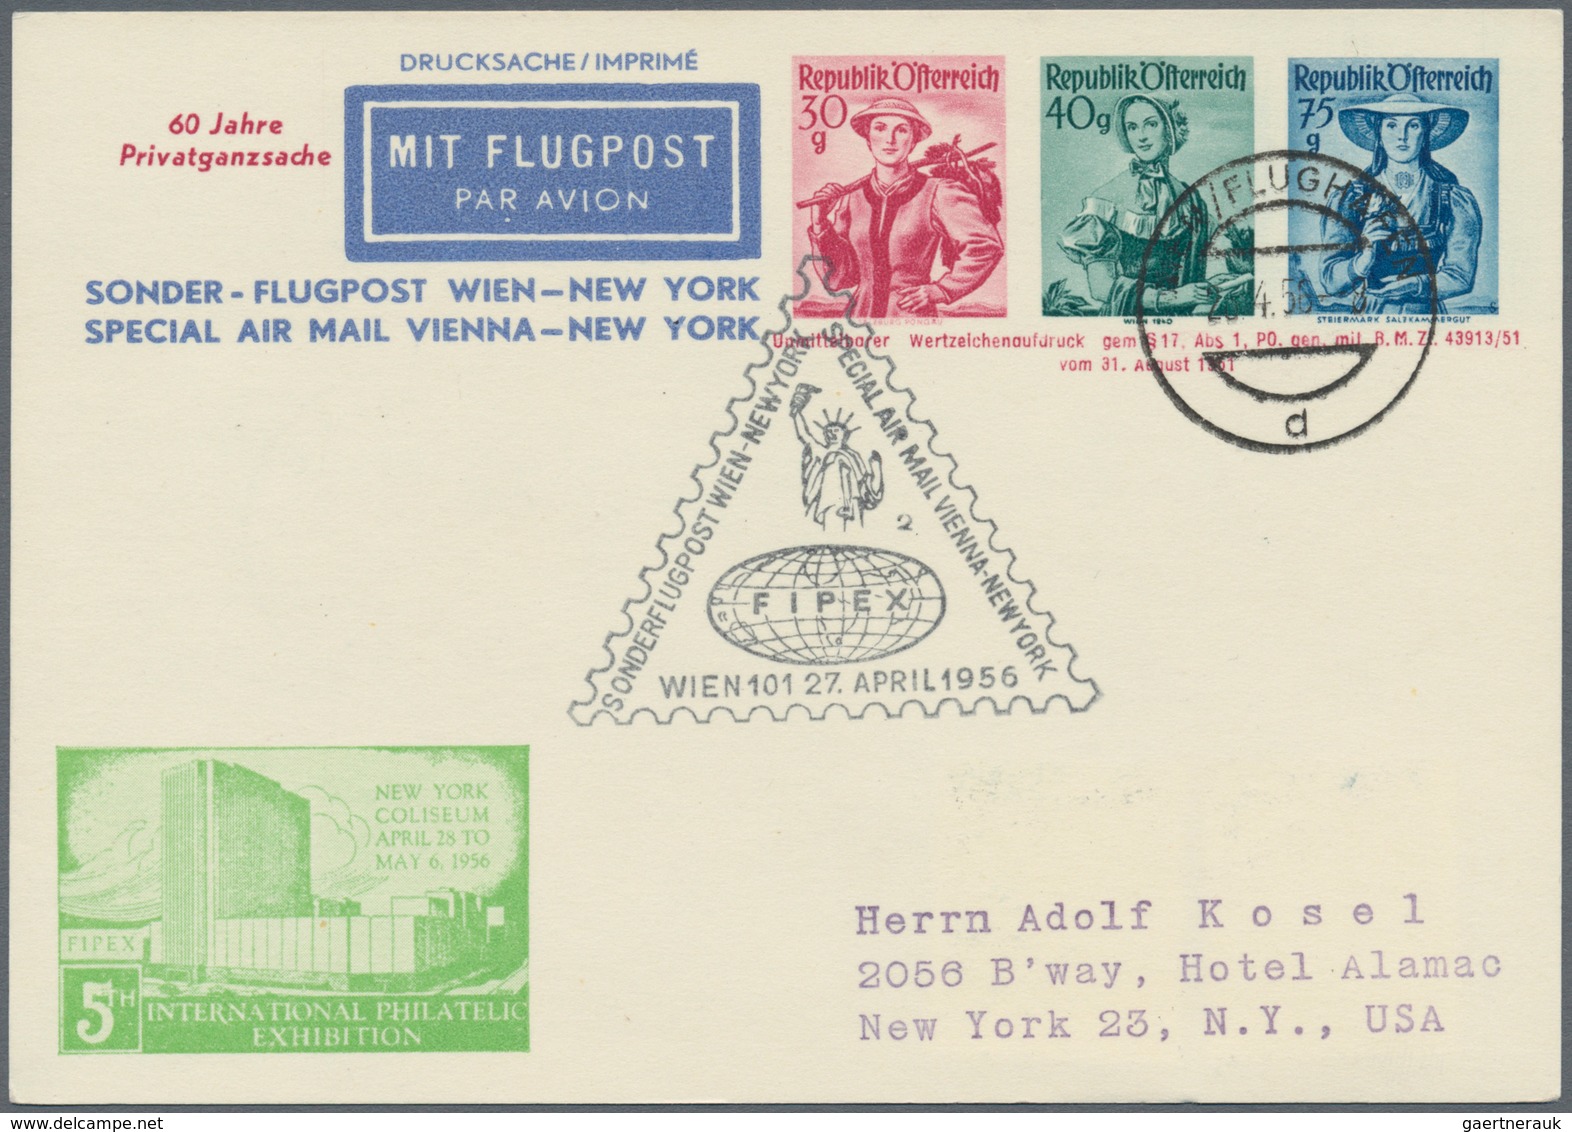 Österreich - Flugpost: 1946/1973, reichhaltige Sammlung mit ca. 630 Flugpostbelegen in 8 Briefealben